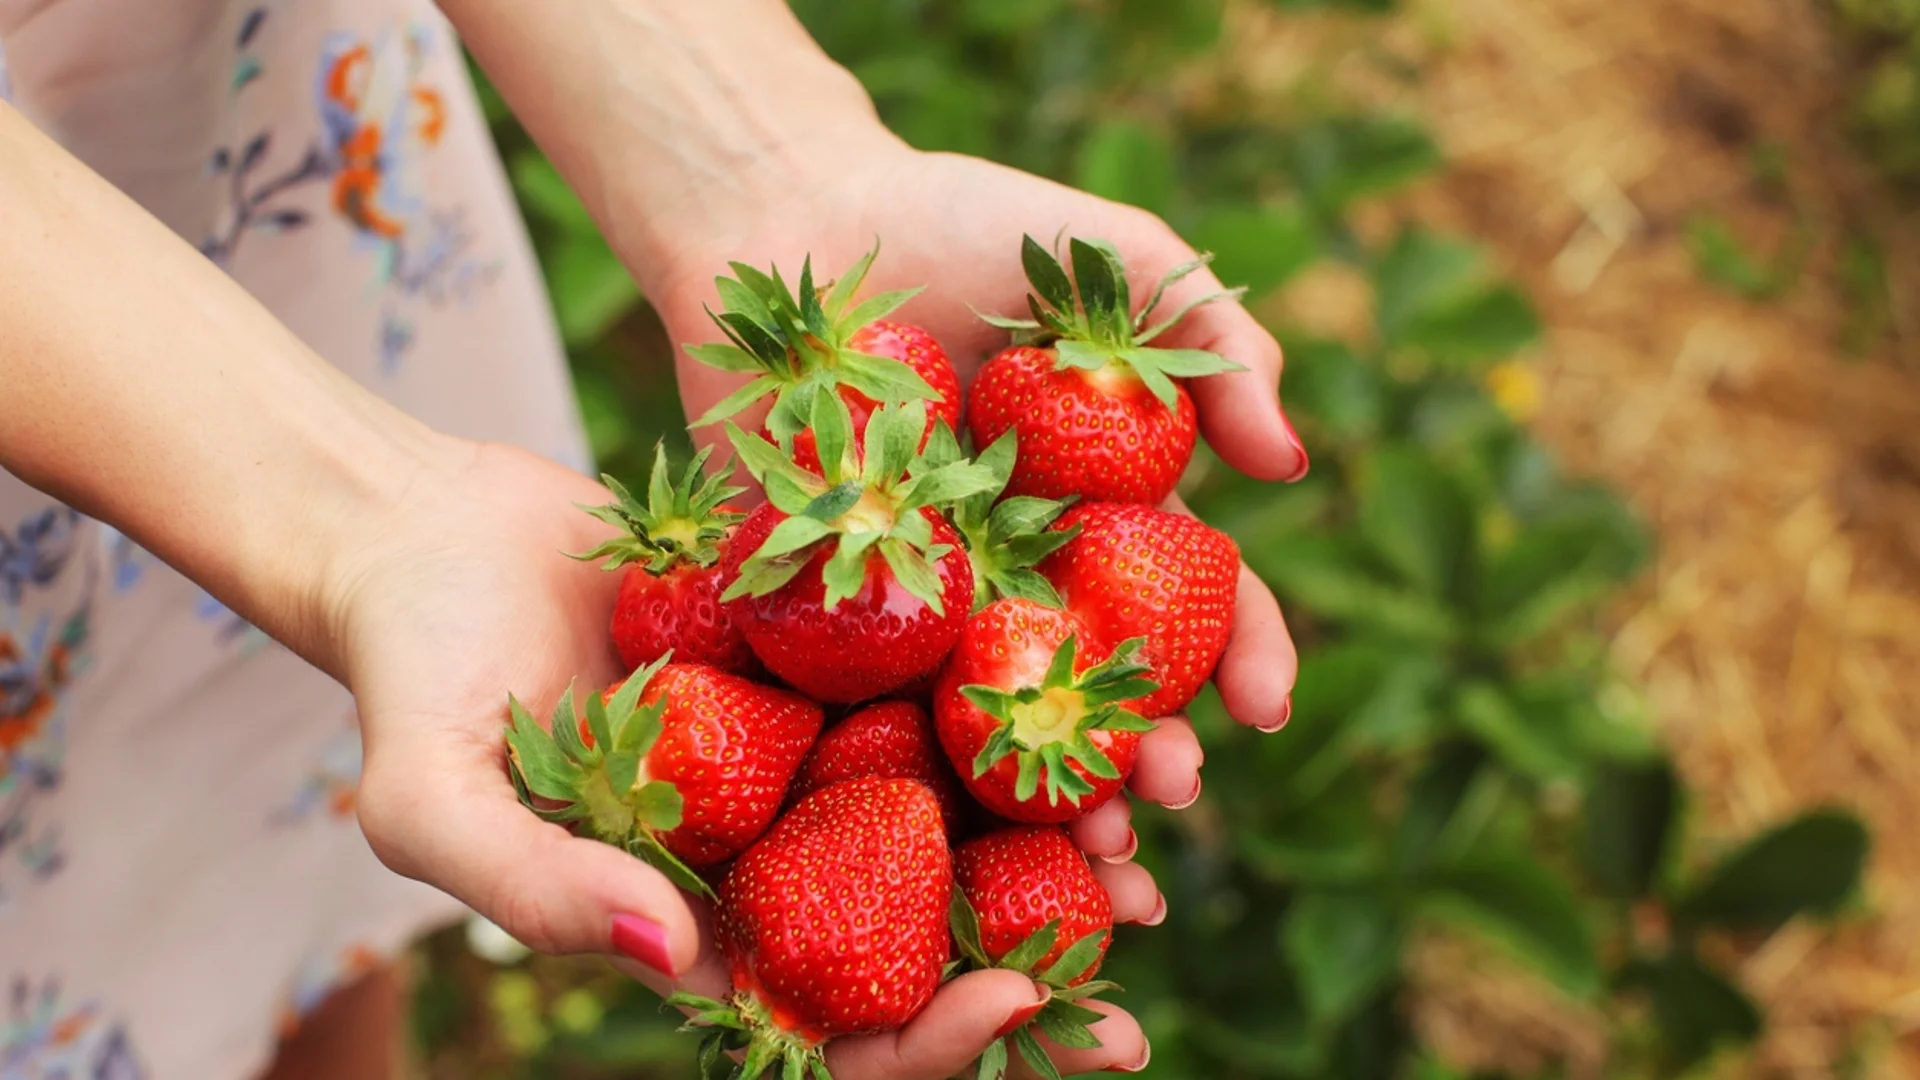 До кои растения трябва да засадим ягоди за богата реколта?